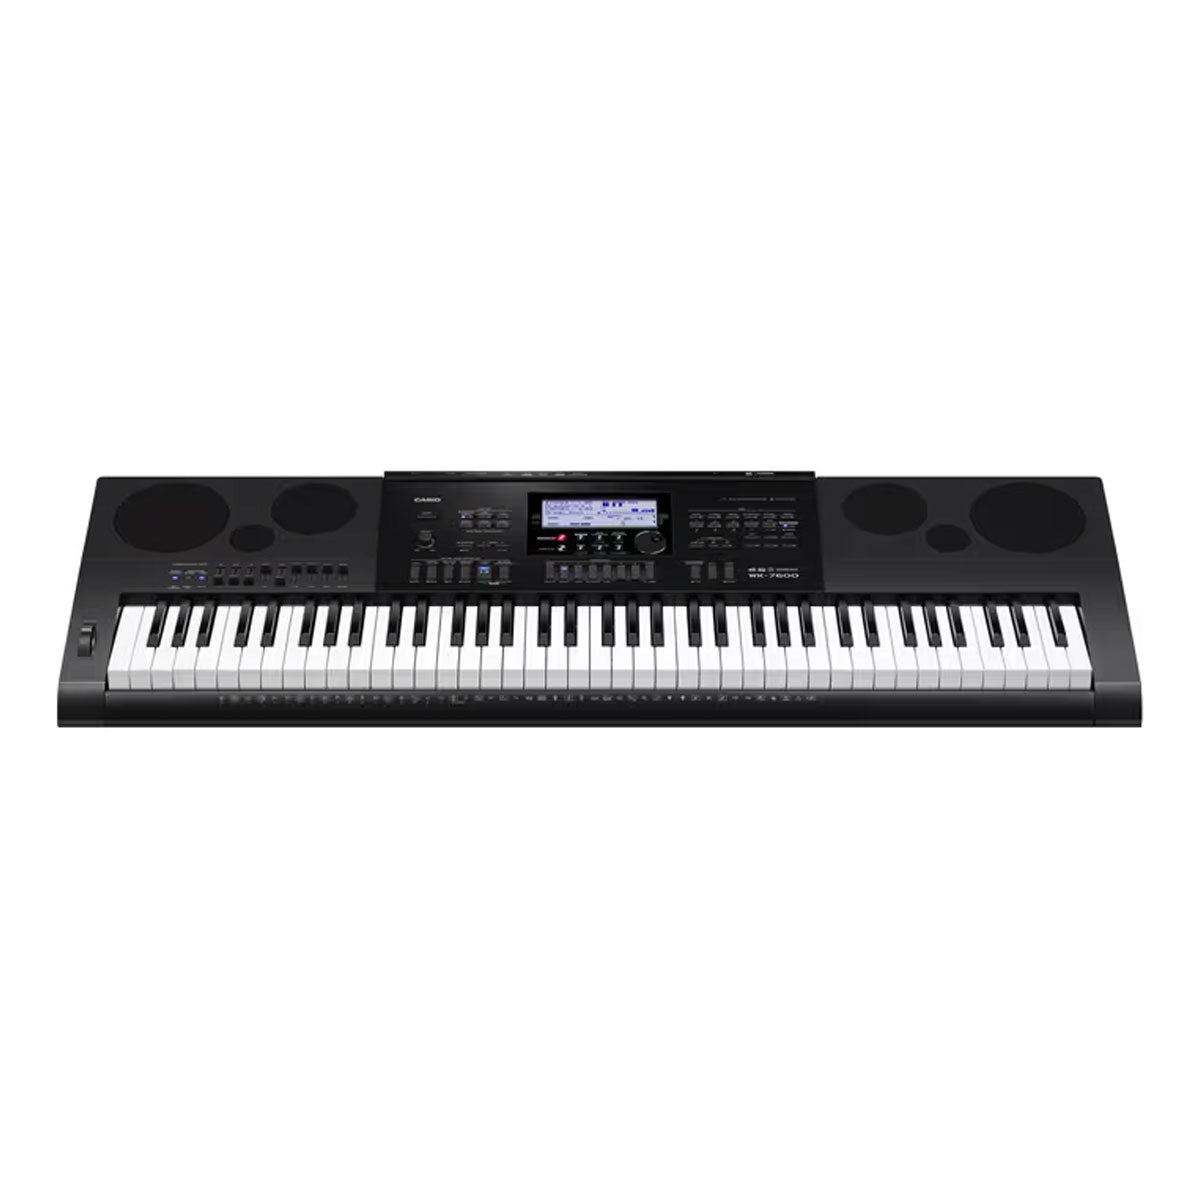 Casio WK-7600 Electronic Keyboard With Headphone